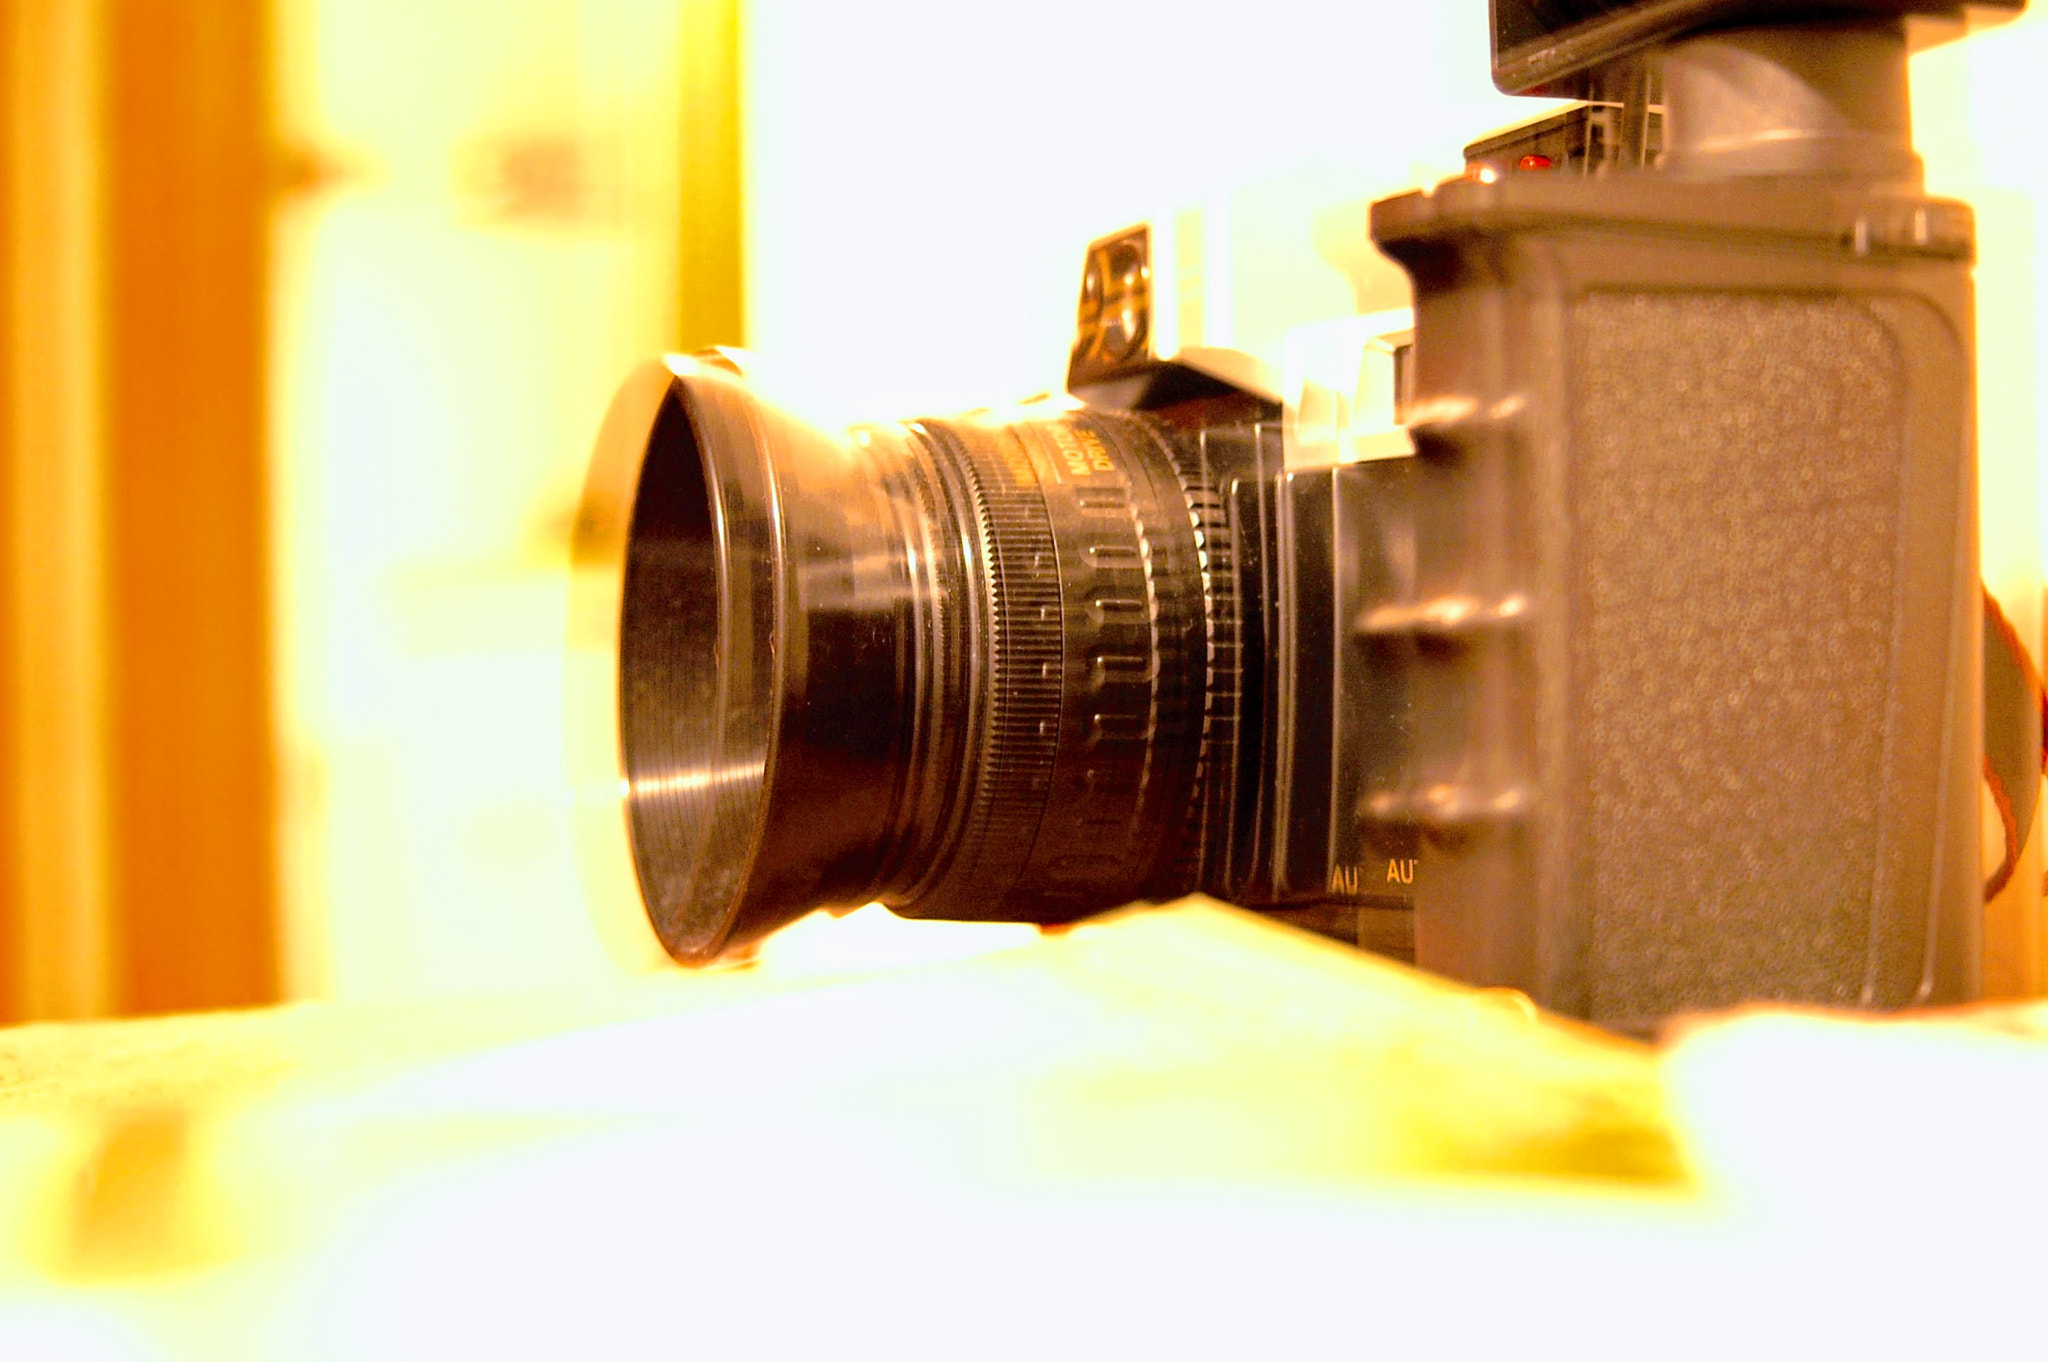 Nikon D70 sample photo. Meta photography